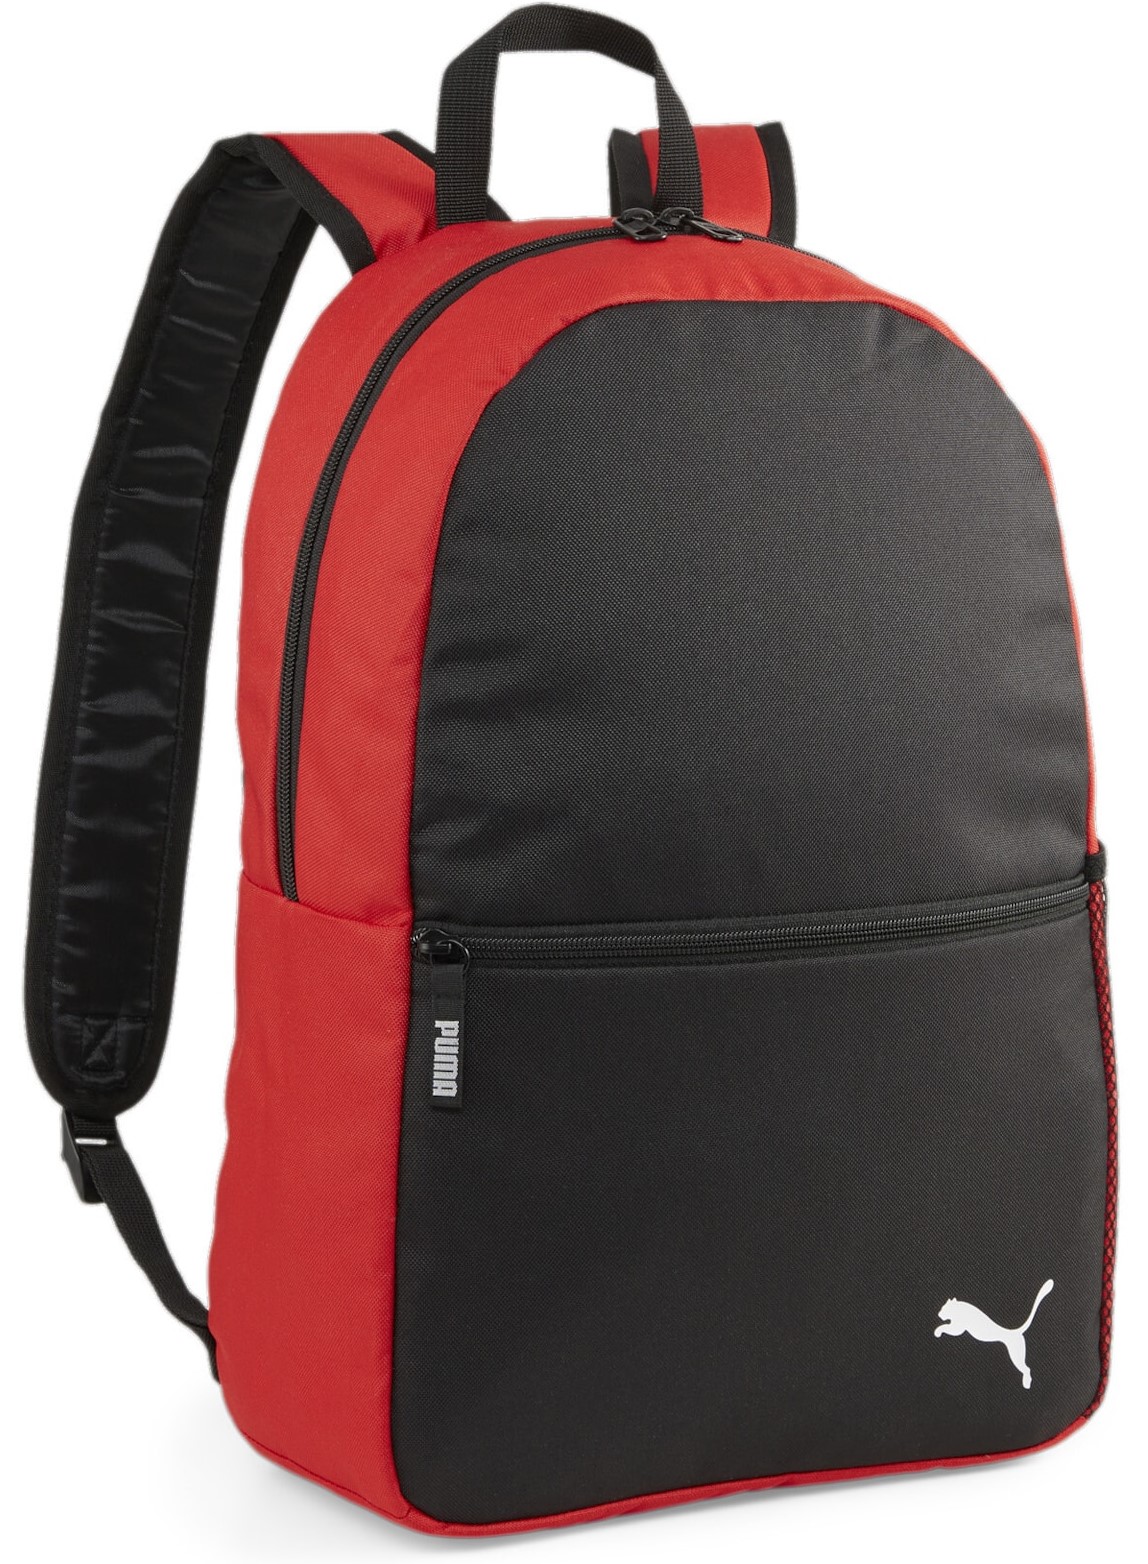 Rucksack Puma teamGOAL Backpack Core